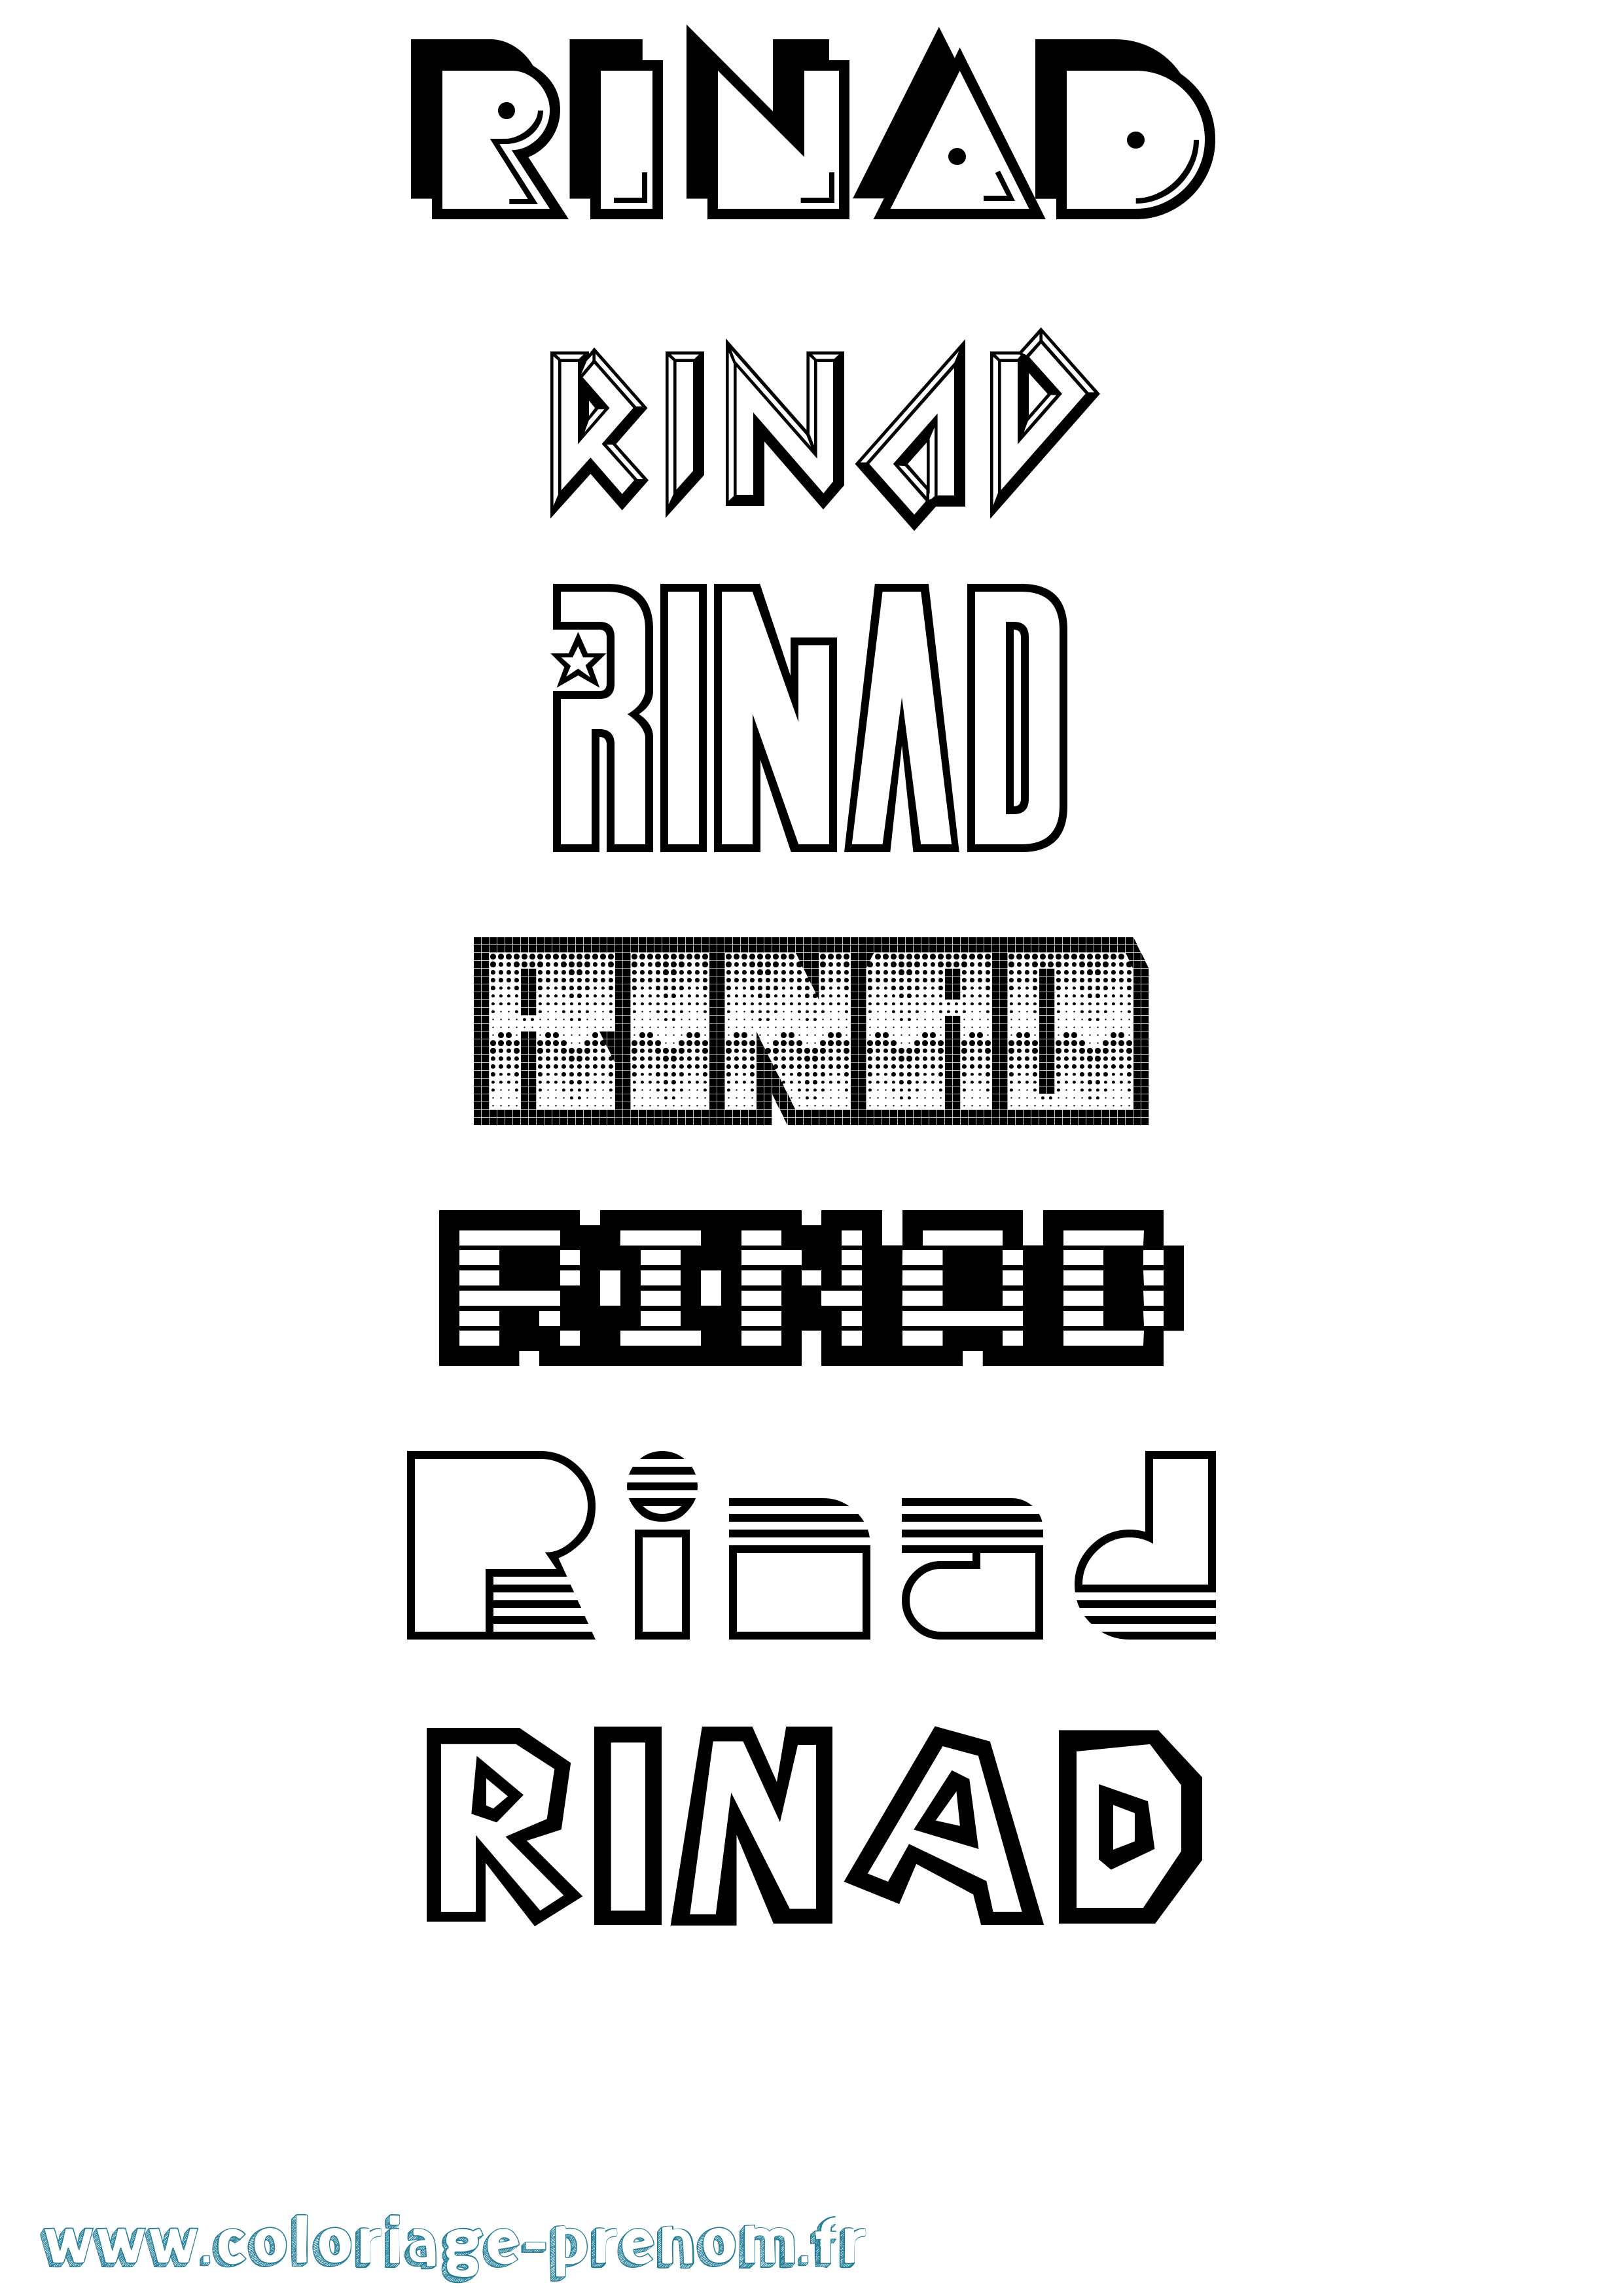 Coloriage prénom Rinad Jeux Vidéos